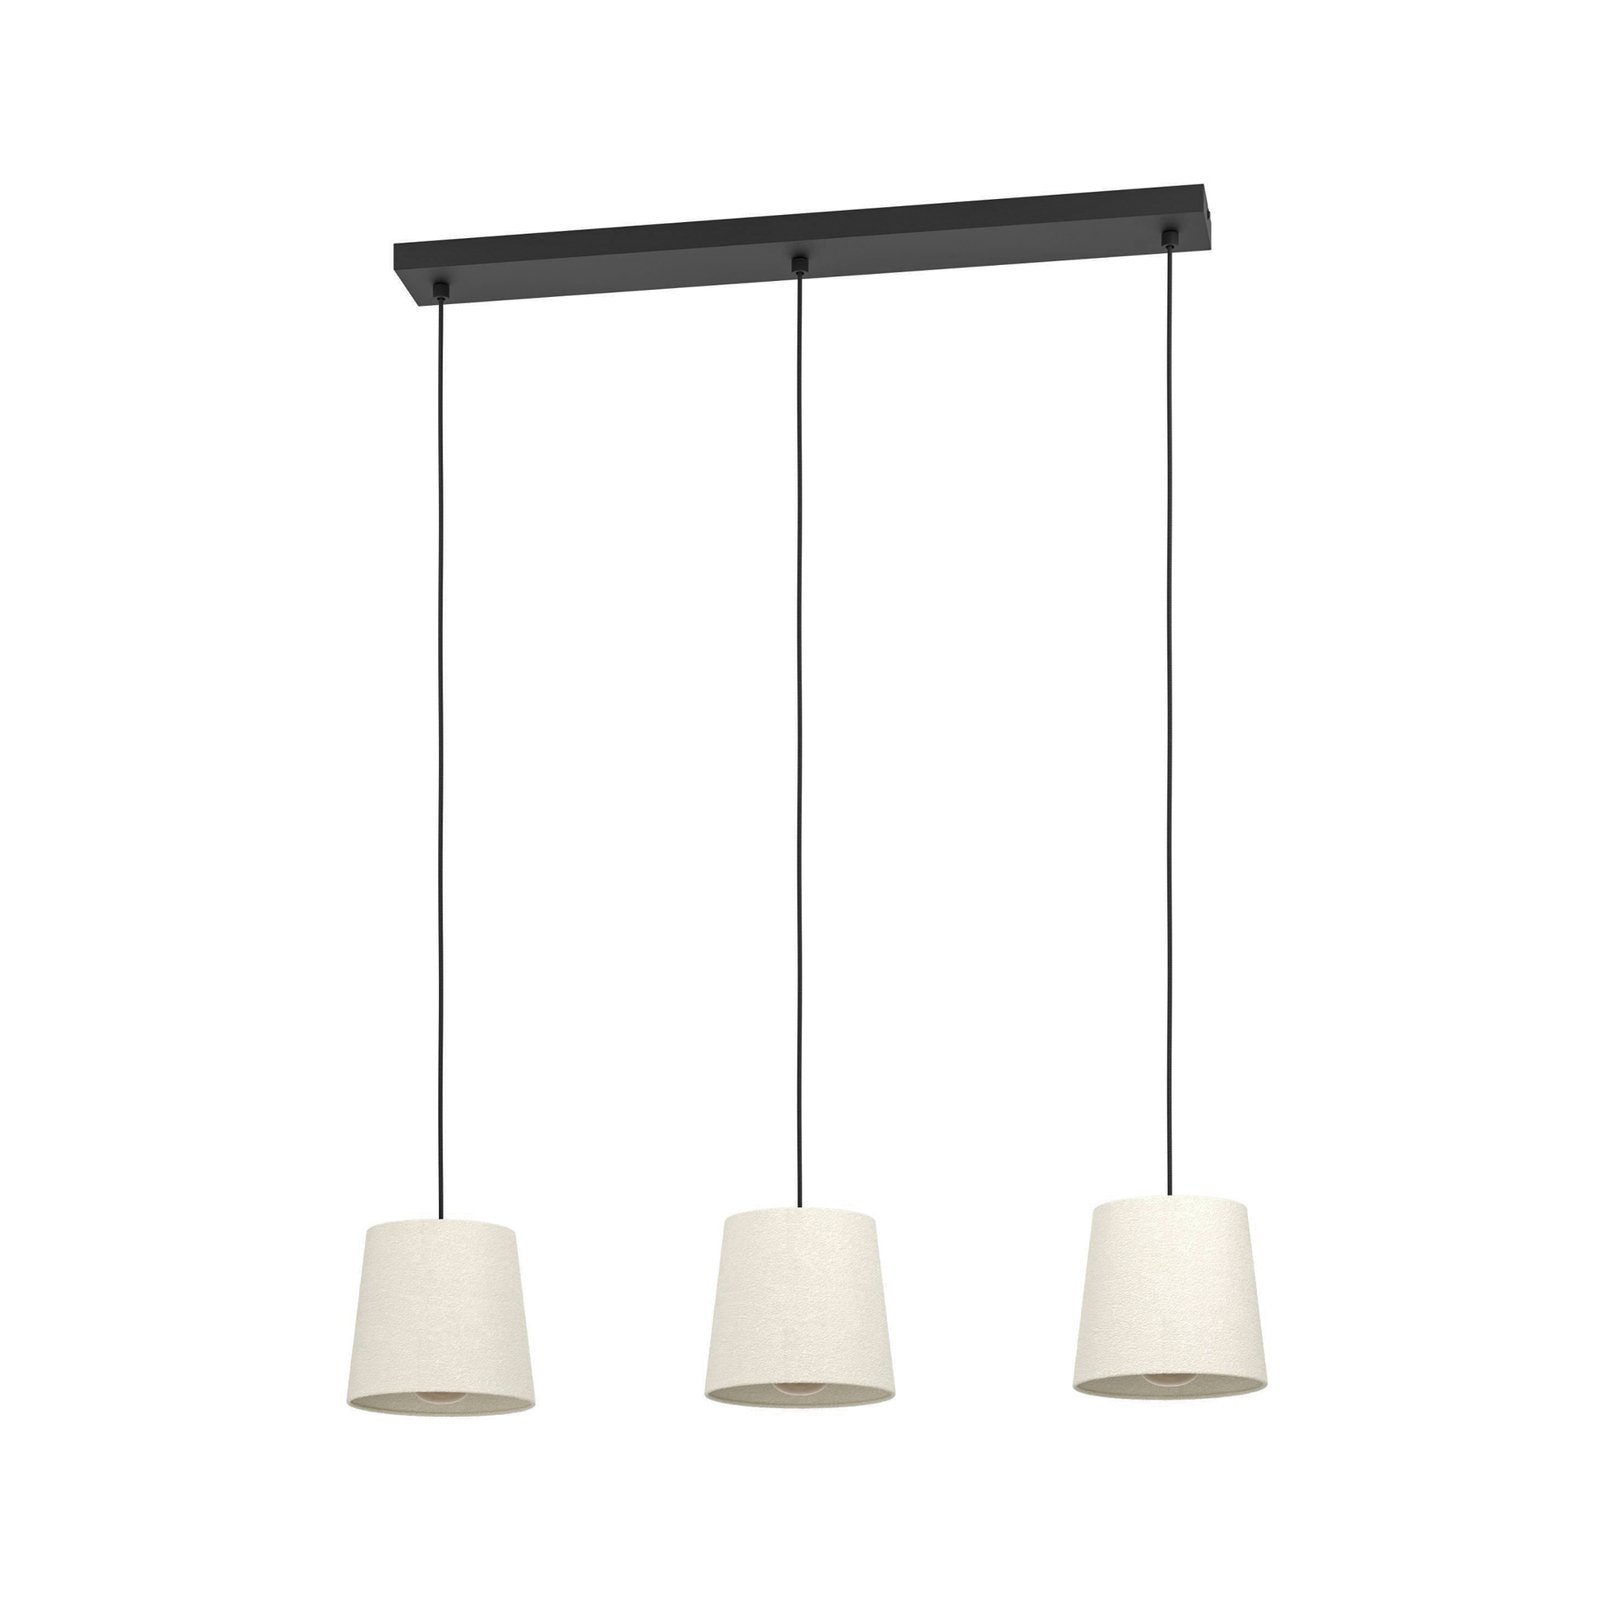 Febres hanglamp, zwart/wit, 3-lamps.